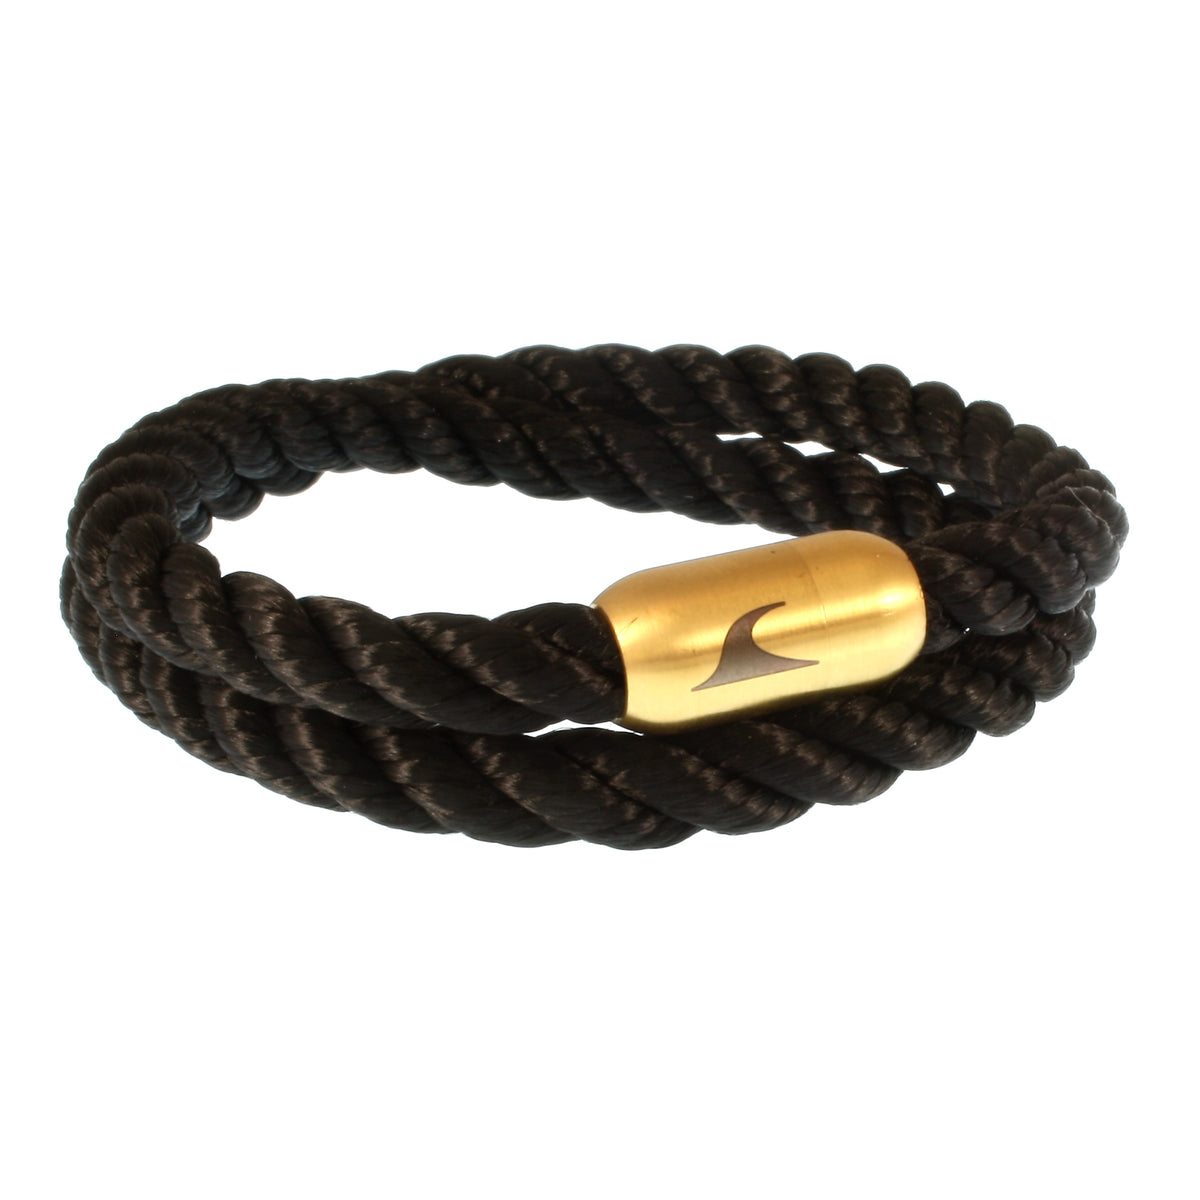 Herren-Segeltau-Armband-hawaii-schwarz-gold-Edelstahlverschluss-vorn-wavepirate-shop-k